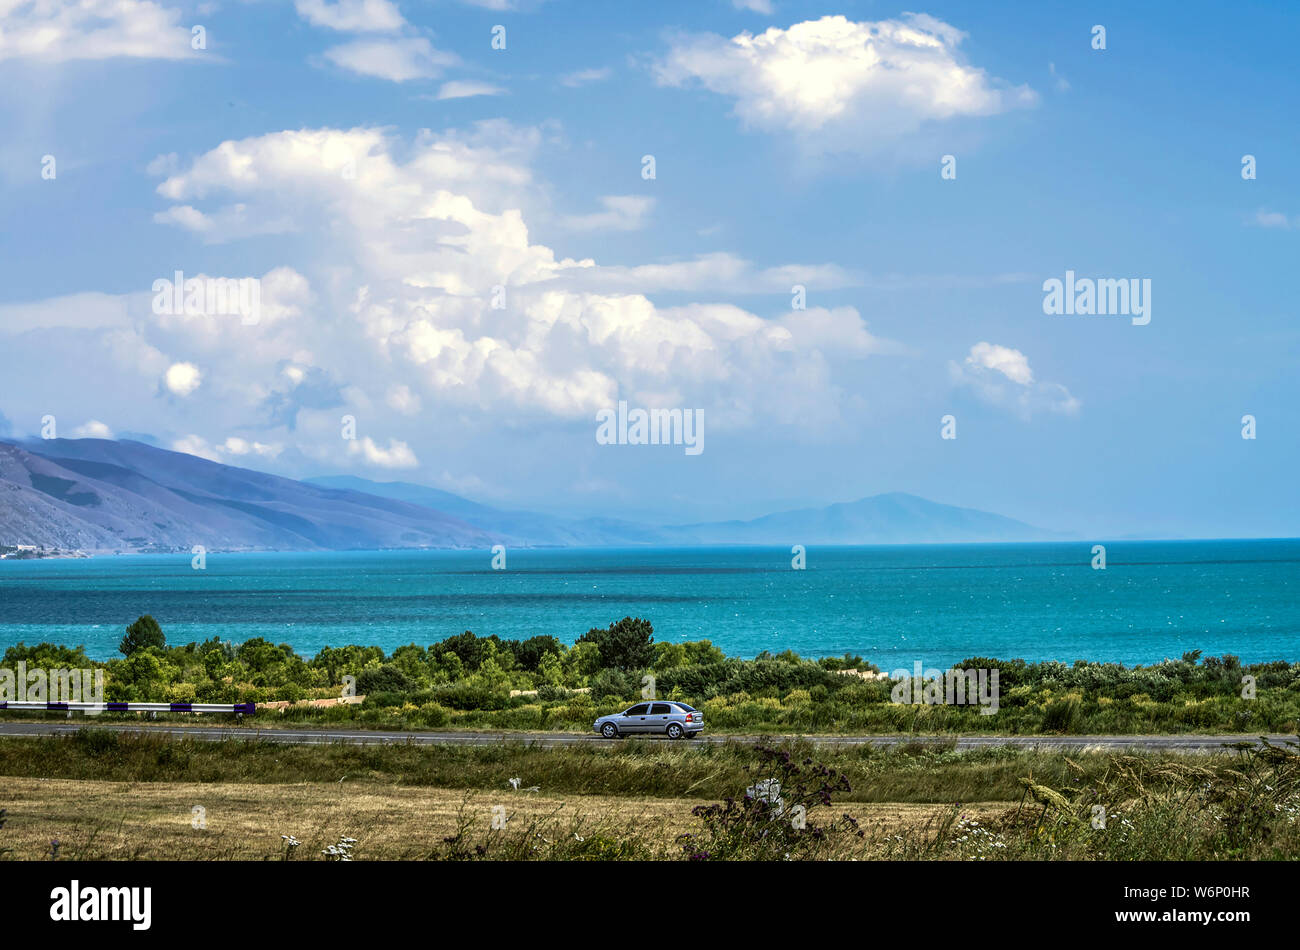 La autopista que pasa a lo largo de la costa de la costa azul del lago Sevan alpino a una altitud de 1900 metros sobre el nivel del mar, en las montañas de Armenia Foto de stock